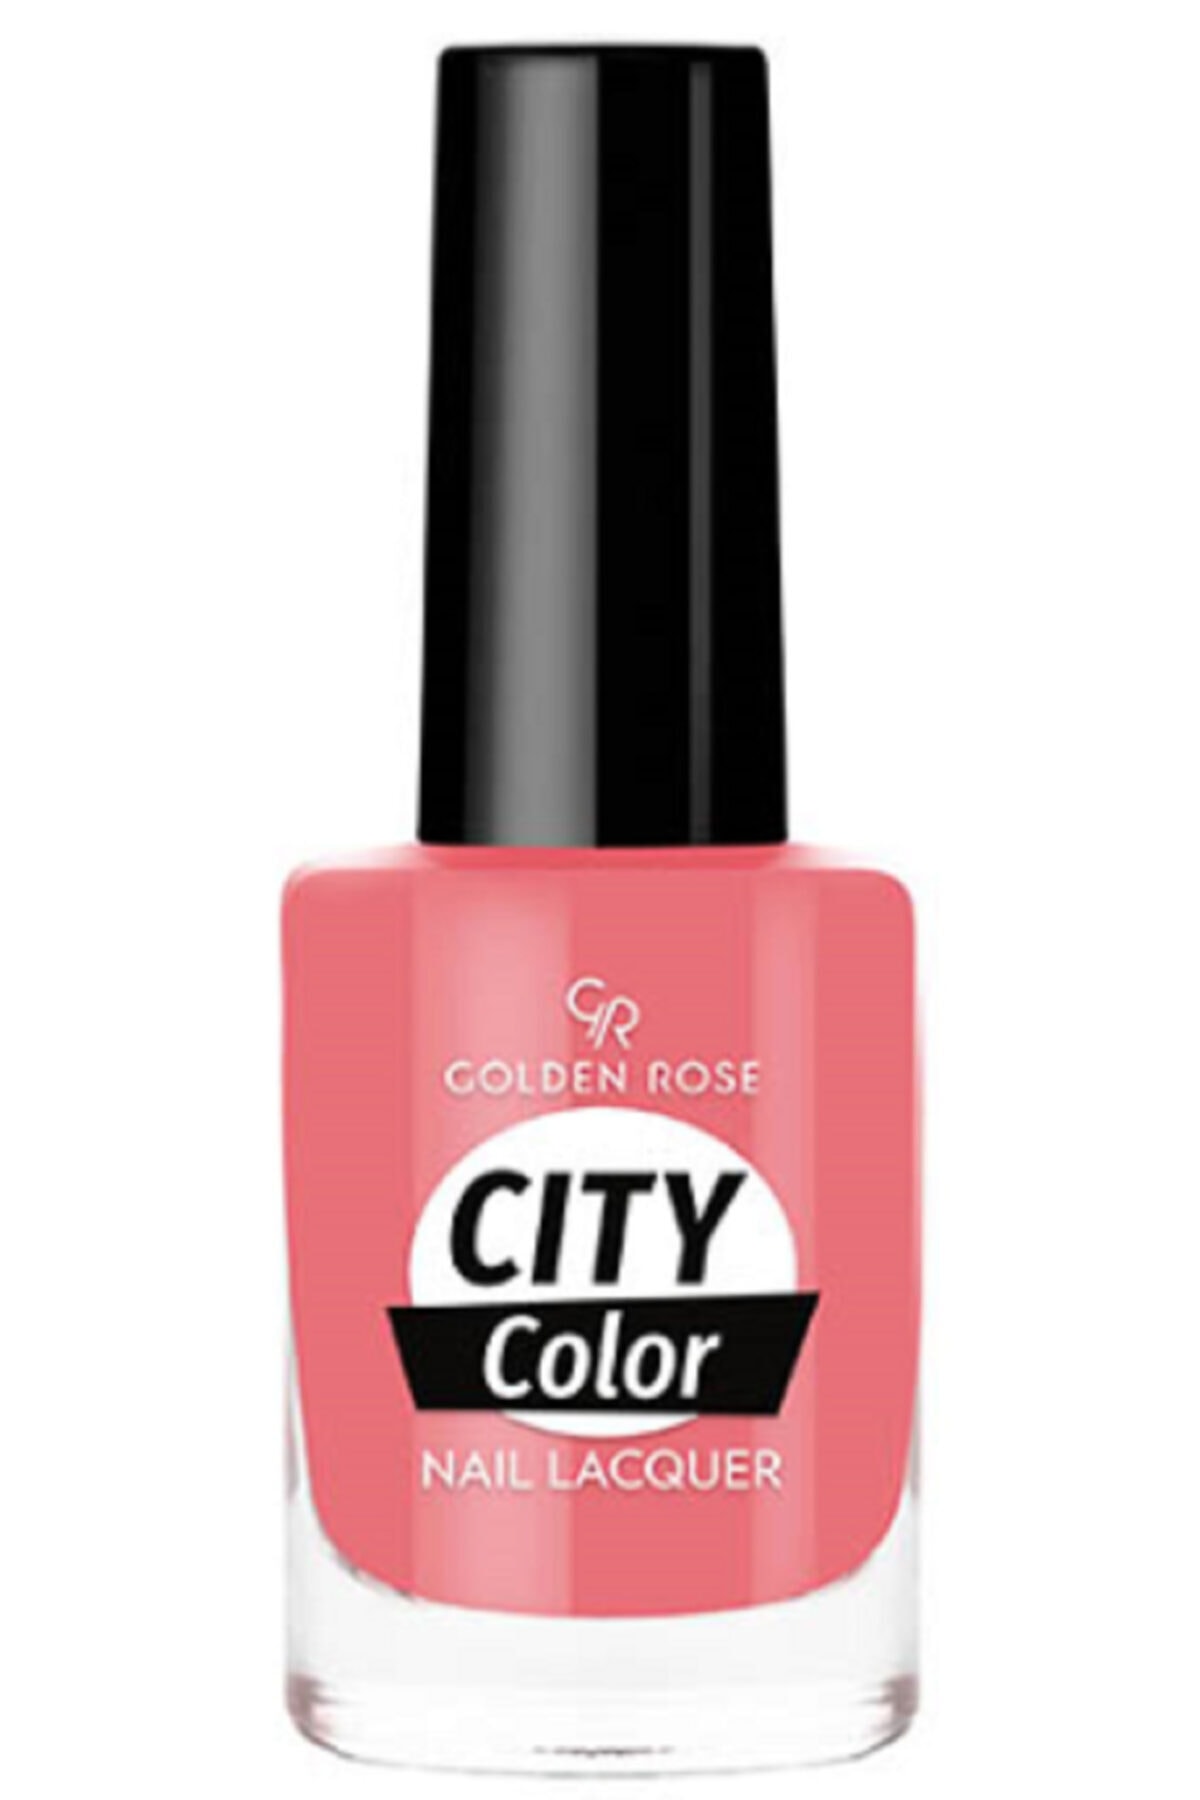 لاک ناخن سیتی کالر City color رنگ بنفش صورتی شماره 24 گلدن رز Golden Rose